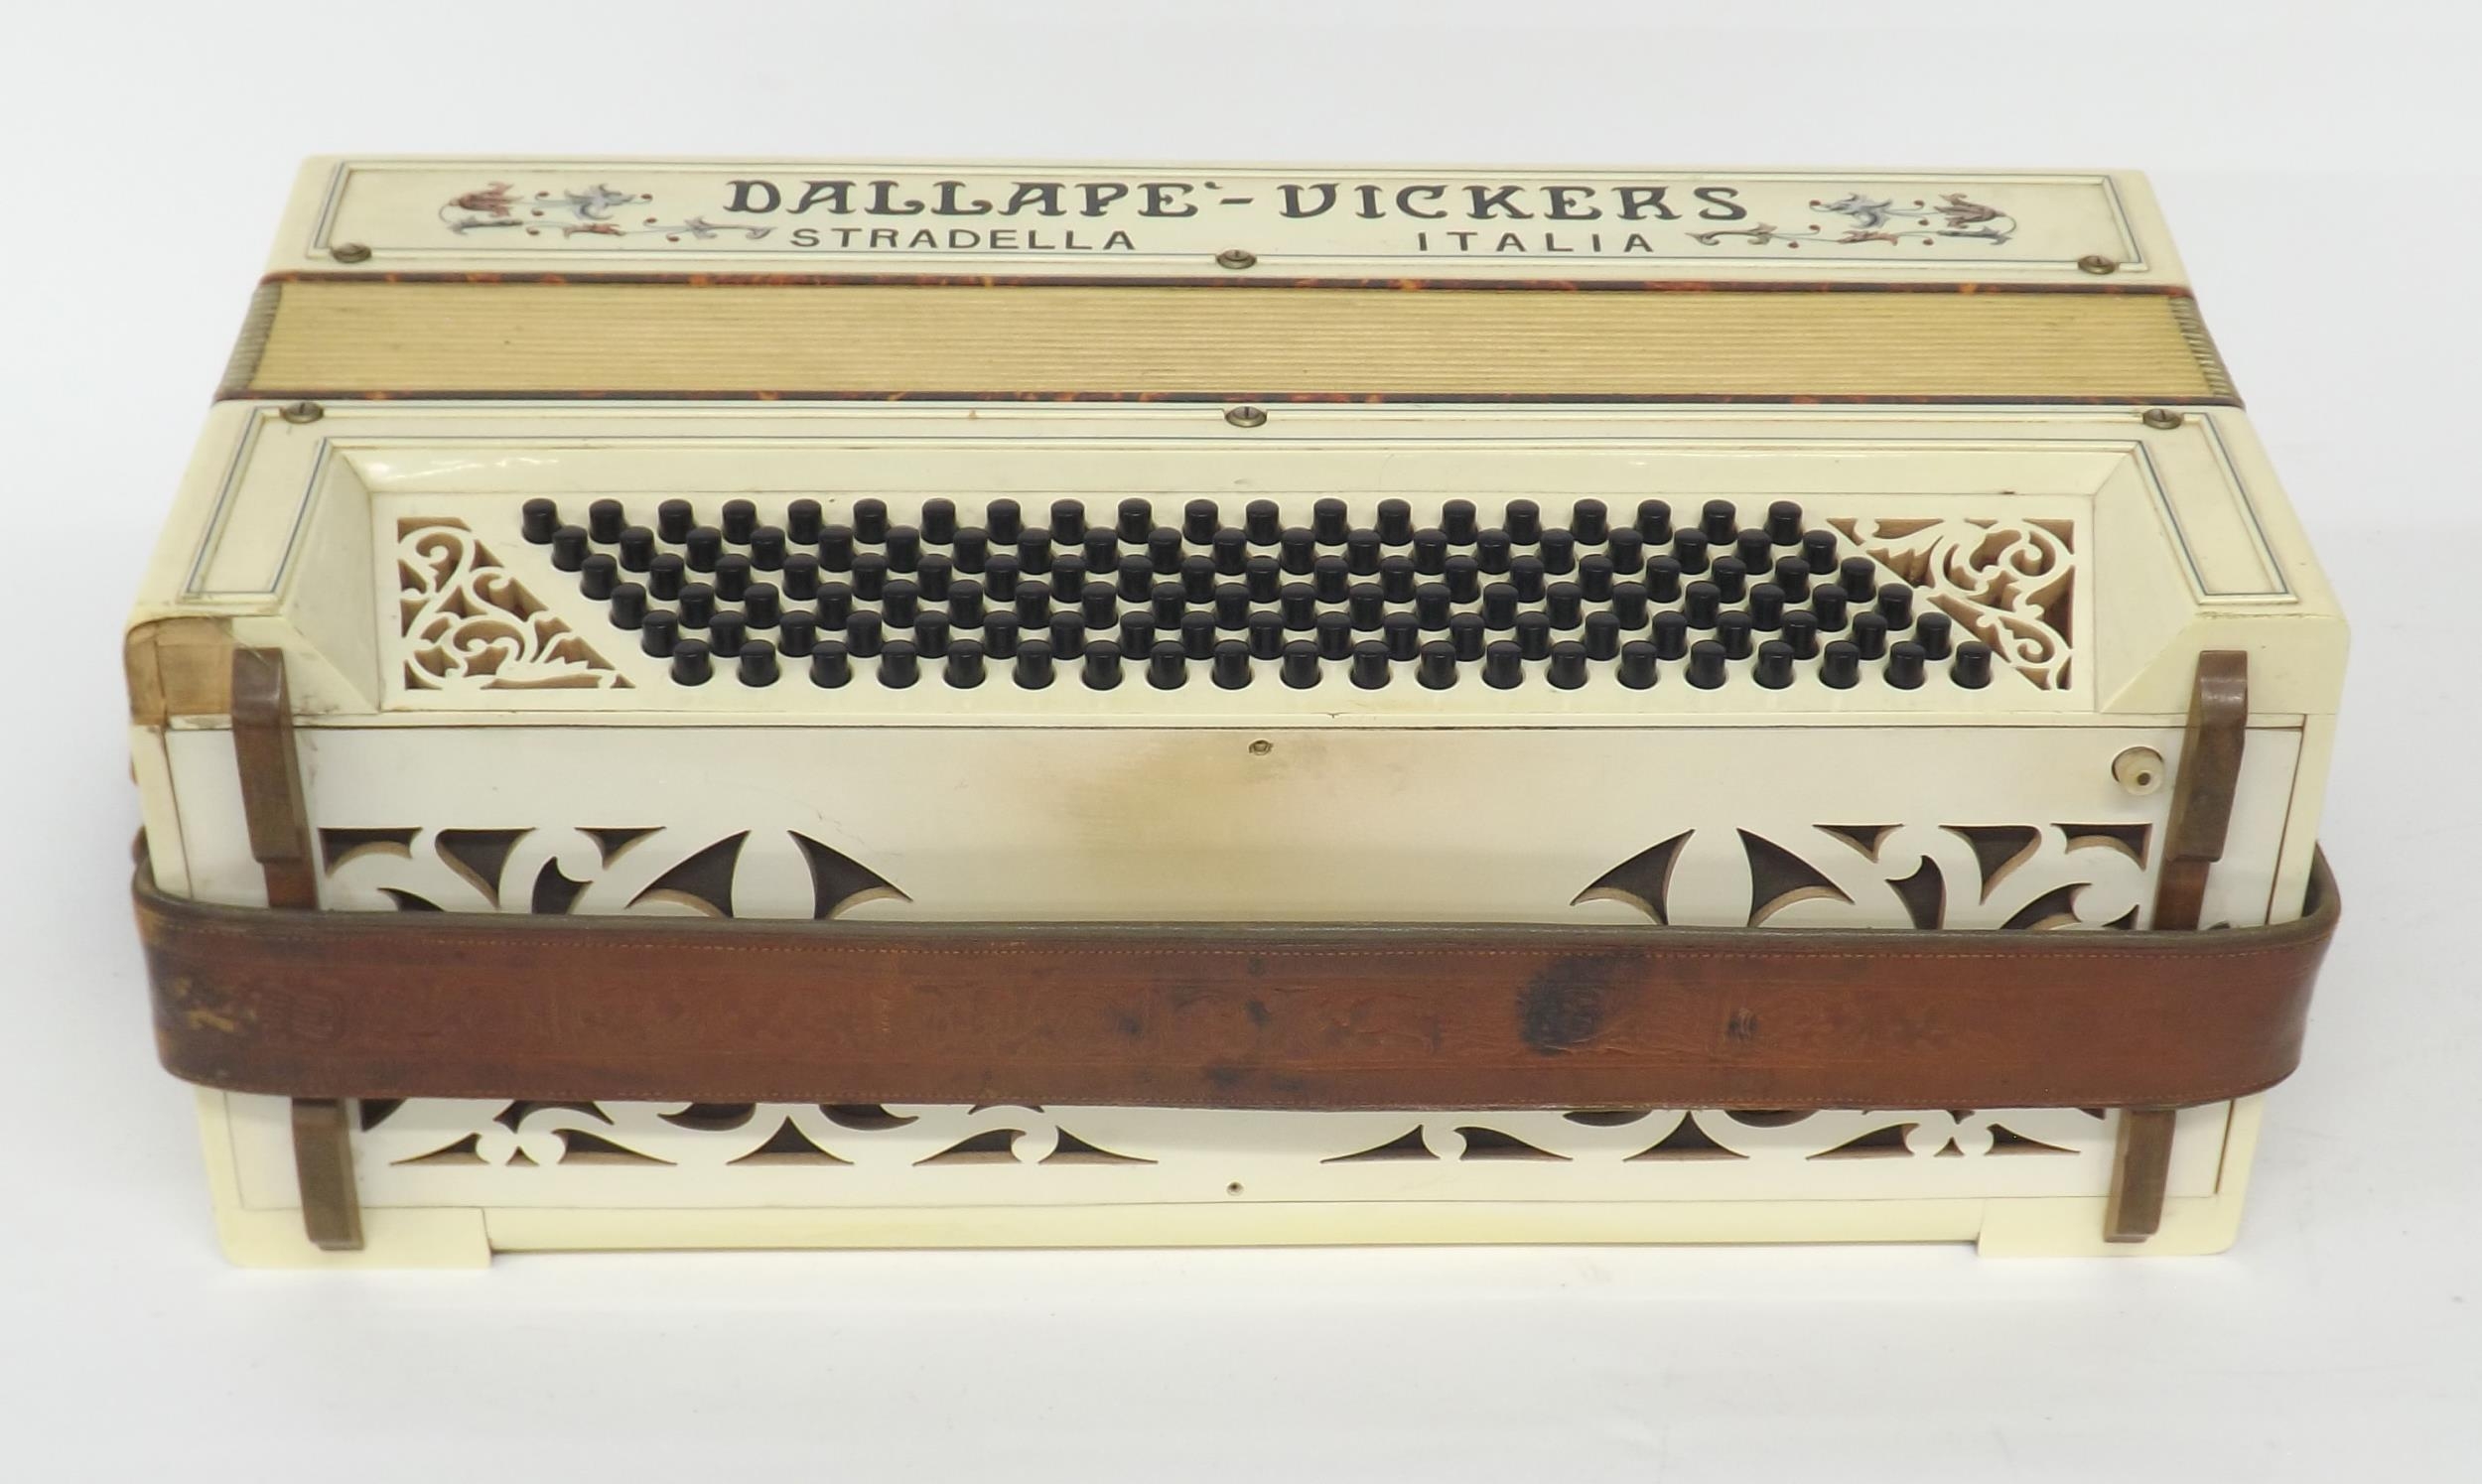 Dallape Vickers Stradella 120 bass piano accordion, white finish, case - Image 3 of 4